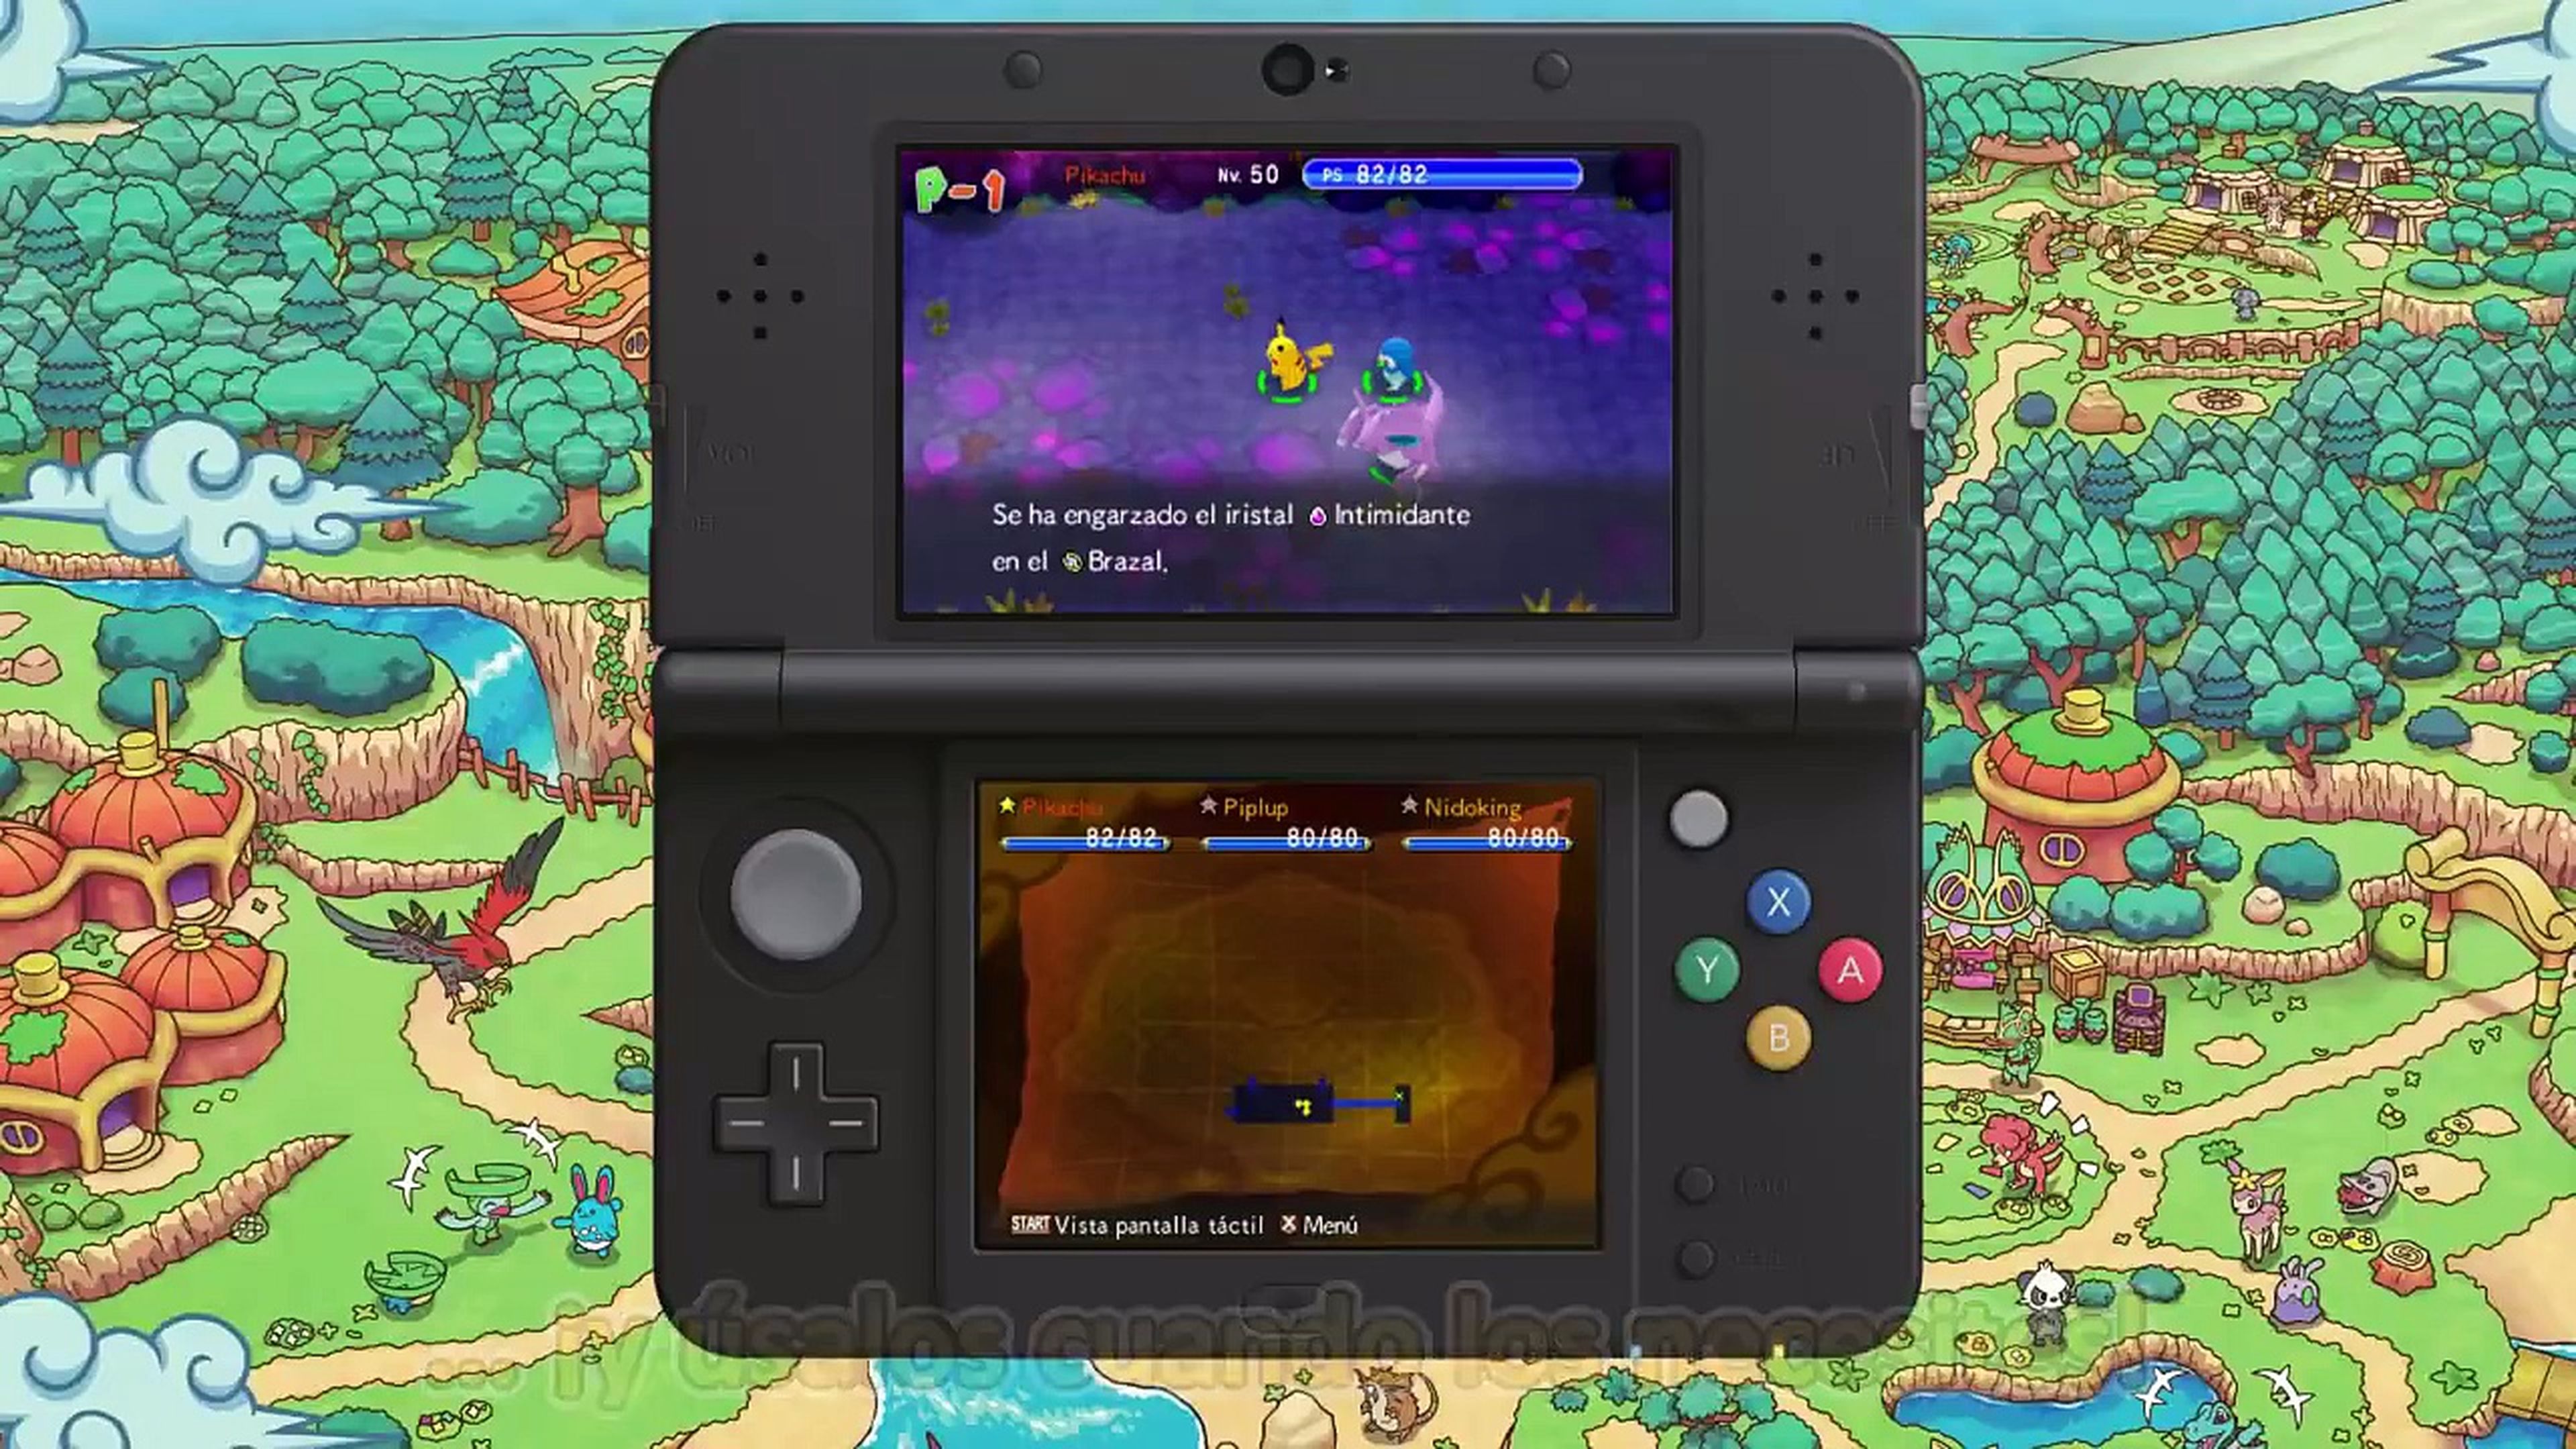 Pokémon Mundo megamisterioso - Tráiler de presentación (Nintendo 3DS)